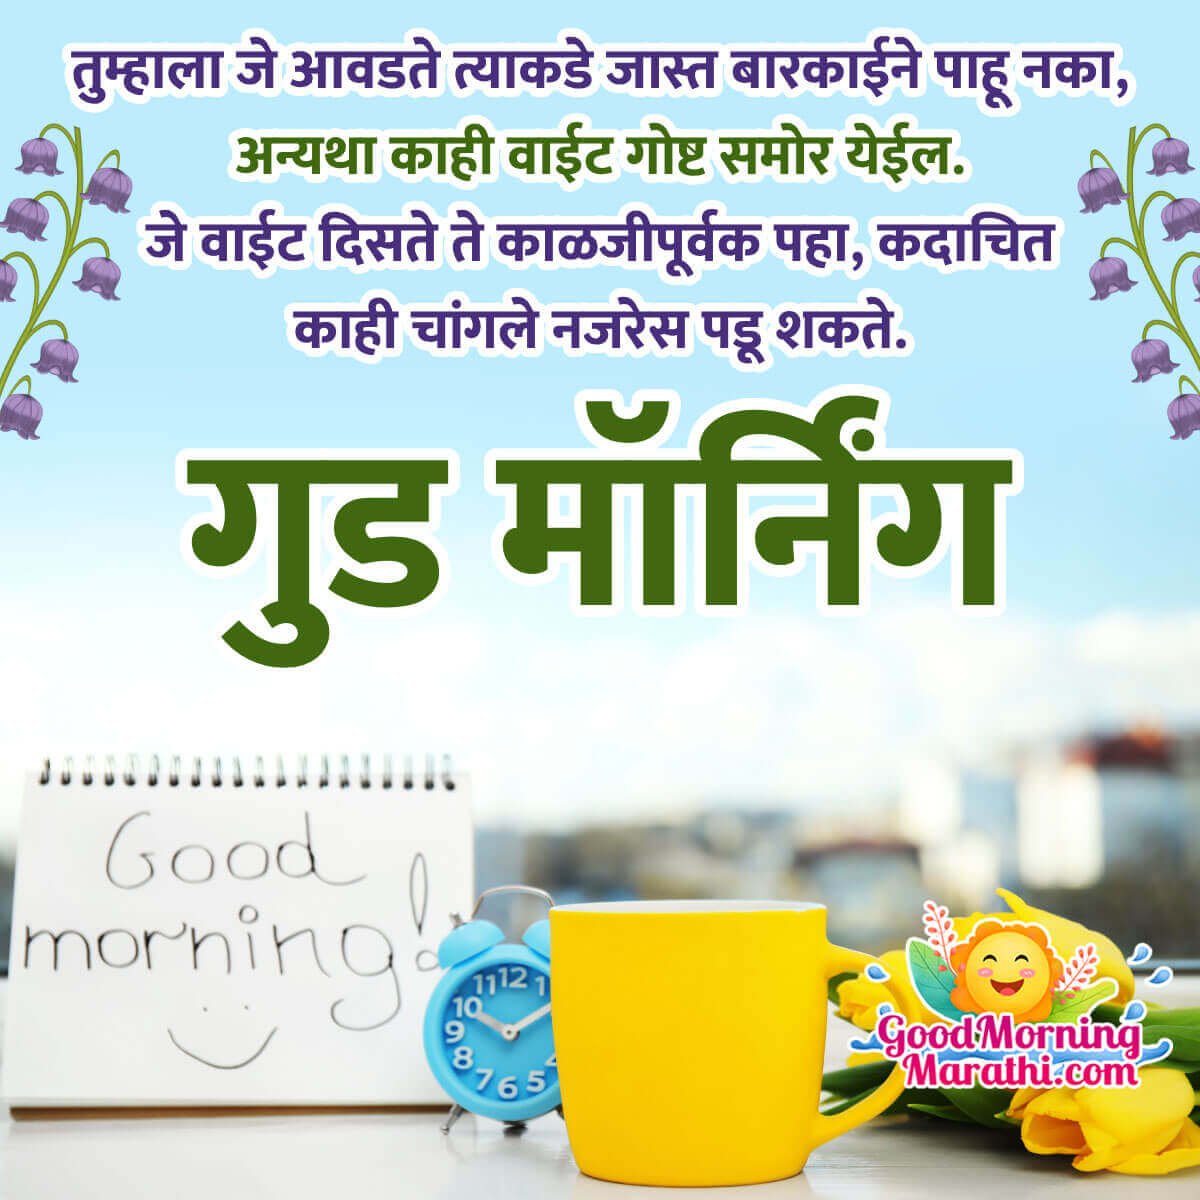 Good Morning Marathi Message Photo